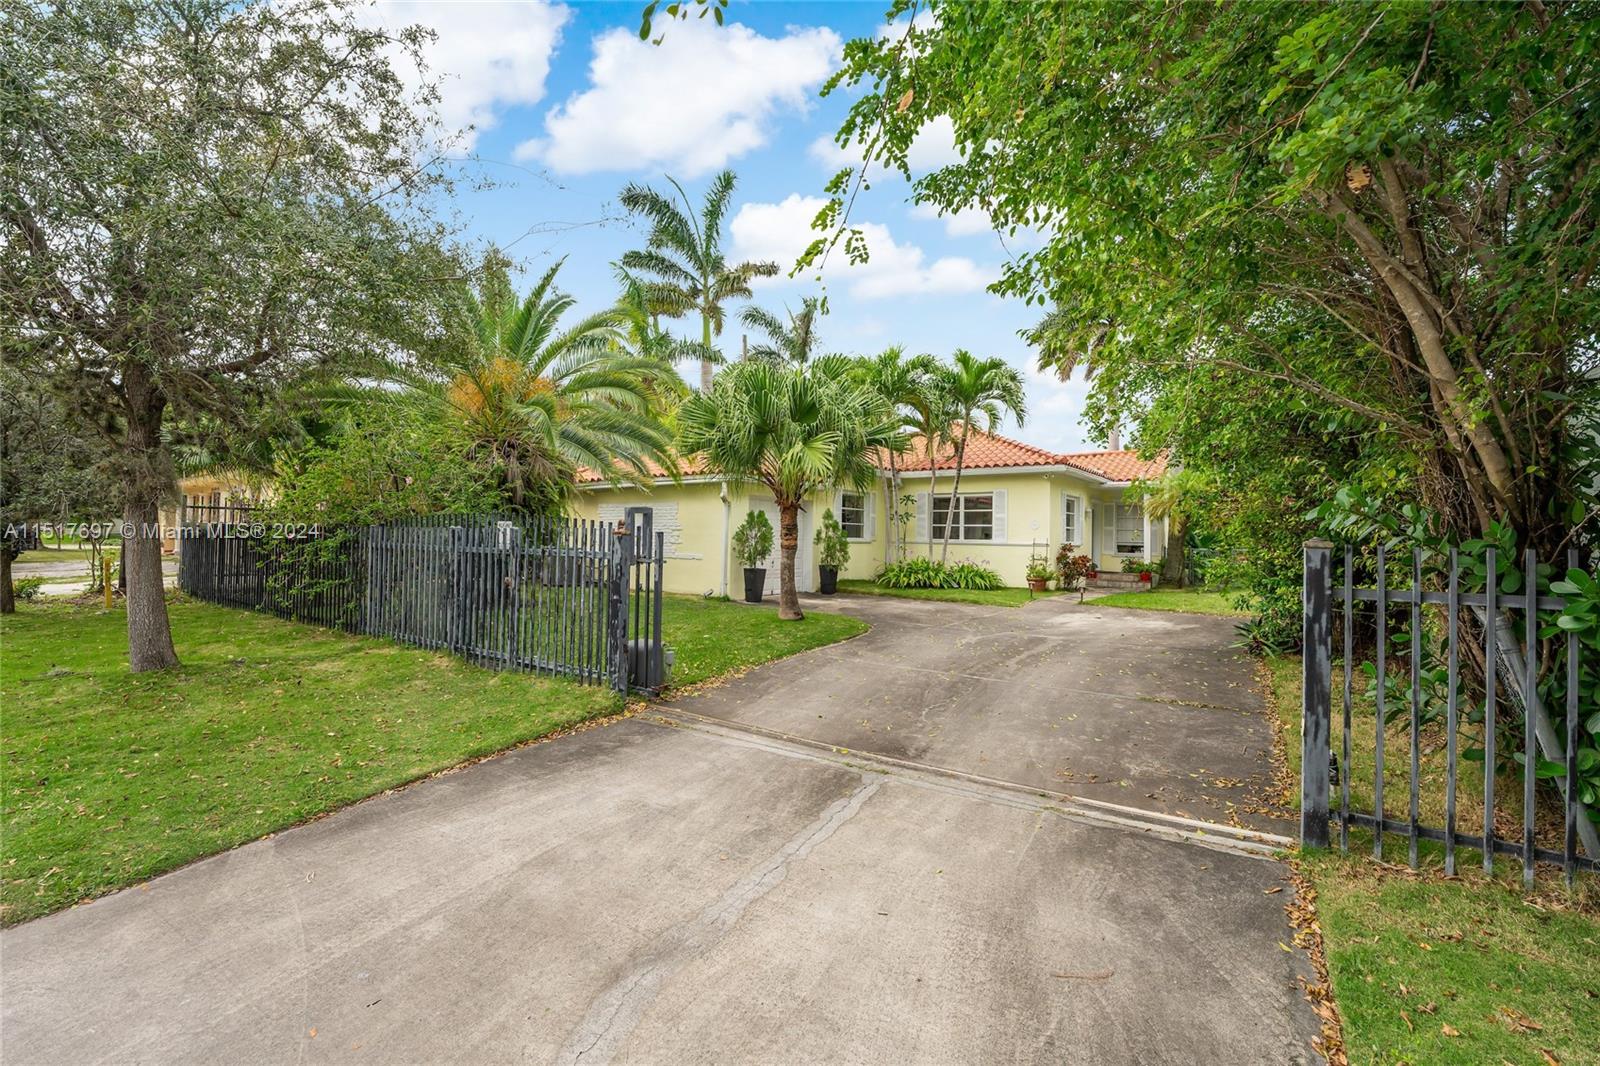 Property for Sale at 1560 Calais Dr, Miami Beach, Miami-Dade County, Florida - Bedrooms: 3 
Bathrooms: 2  - $1,499,000